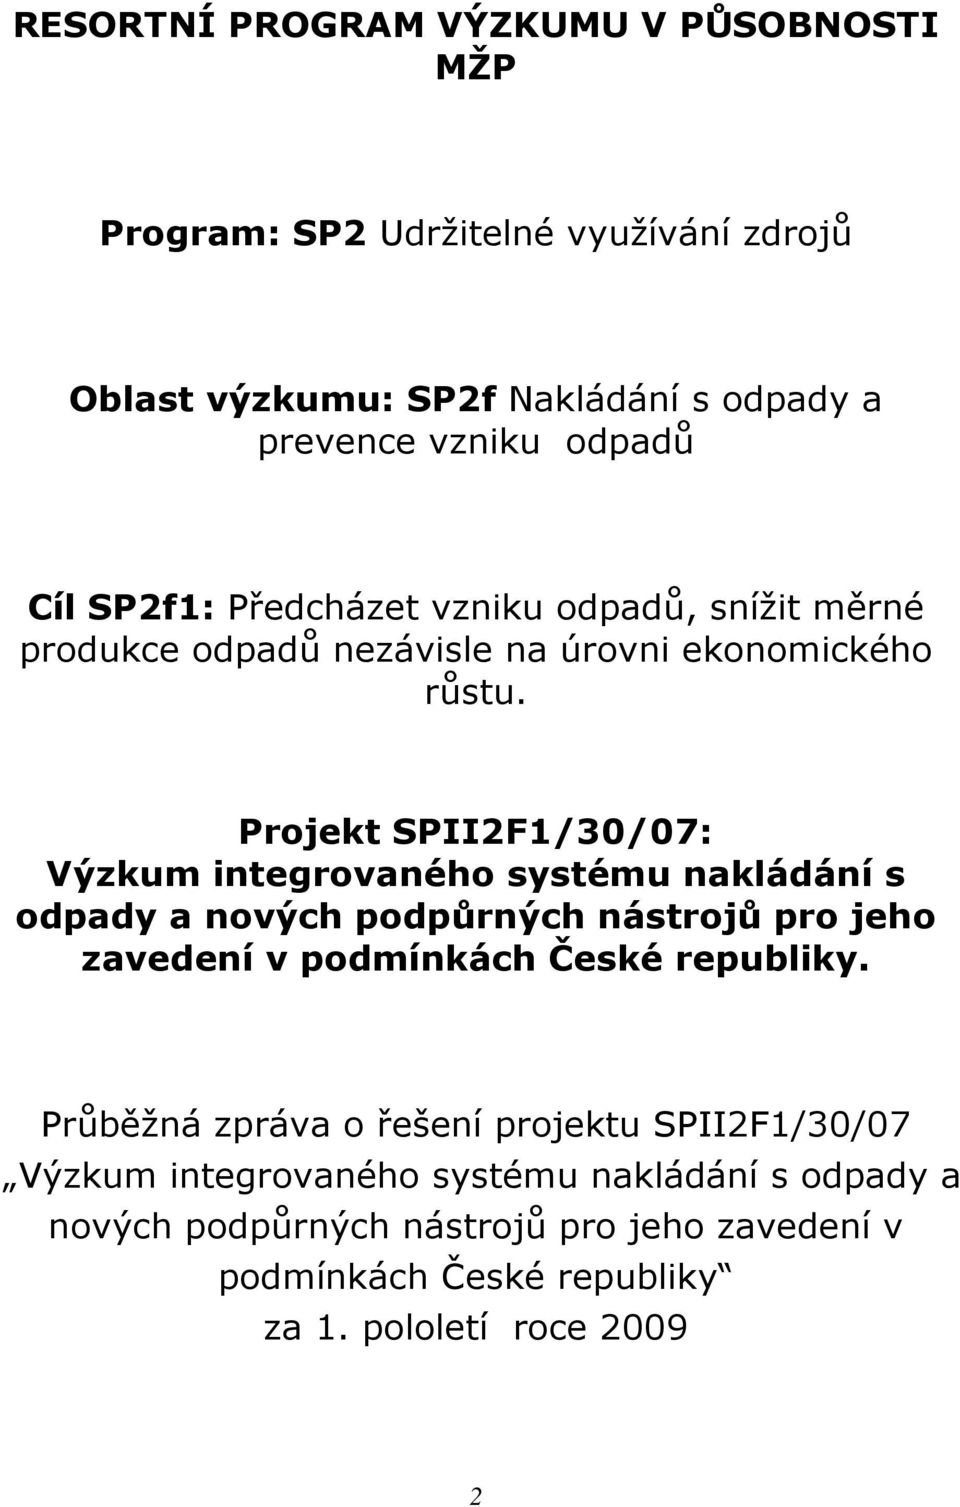 Projekt SPII2F1/30/07: Výzkum integrovaného systému nakládání s odpady a nových podpůrných nástrojů pro jeho zavedení v podmínkách České republiky.